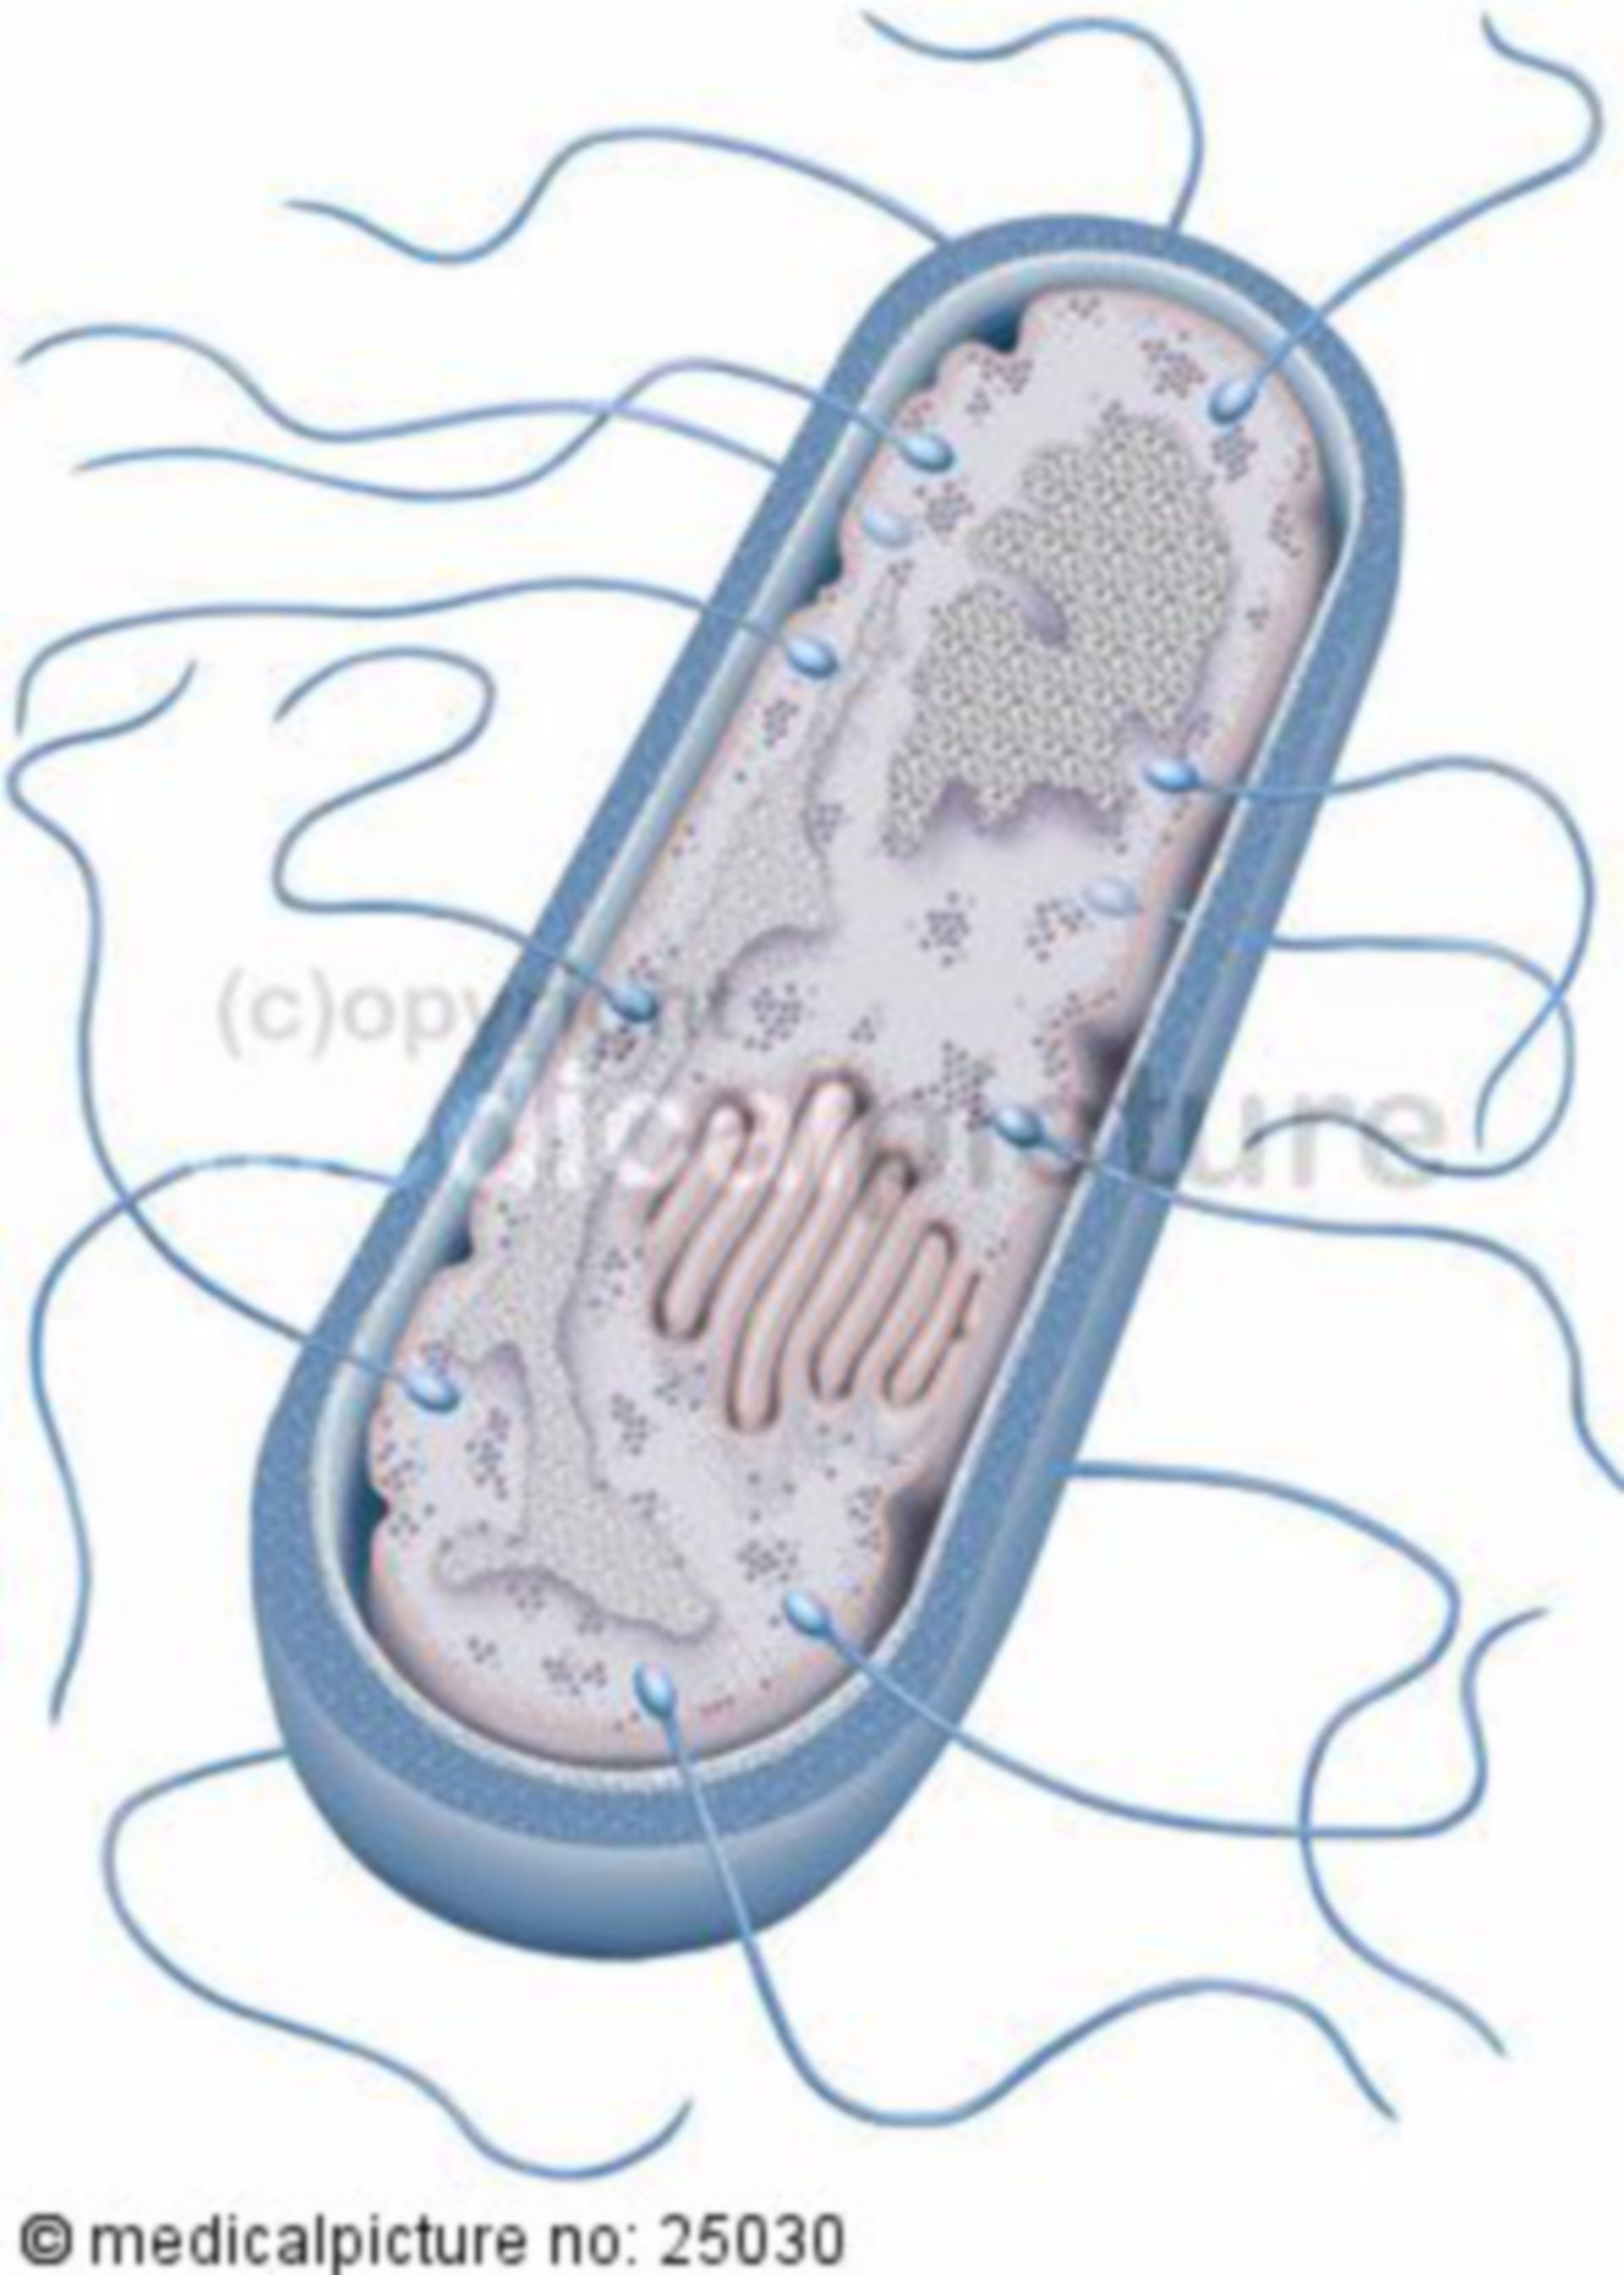  Staebchenbakterie, bacillus 
